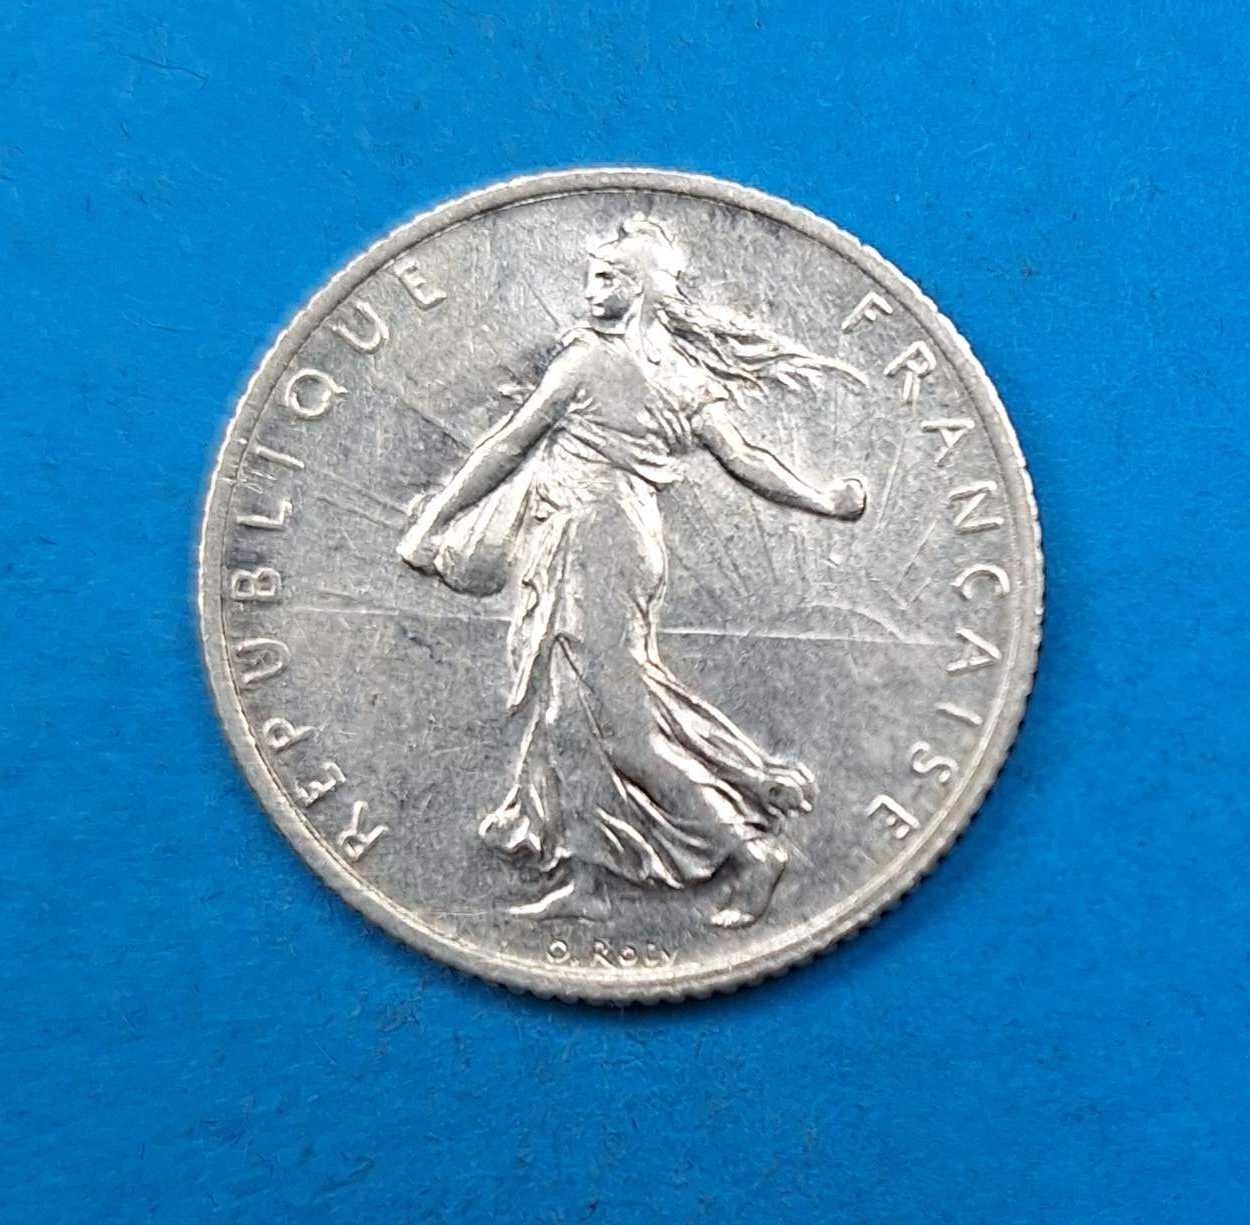 Francja 1 frank rok 1915, bardzo dobry stan, srebro 0,835